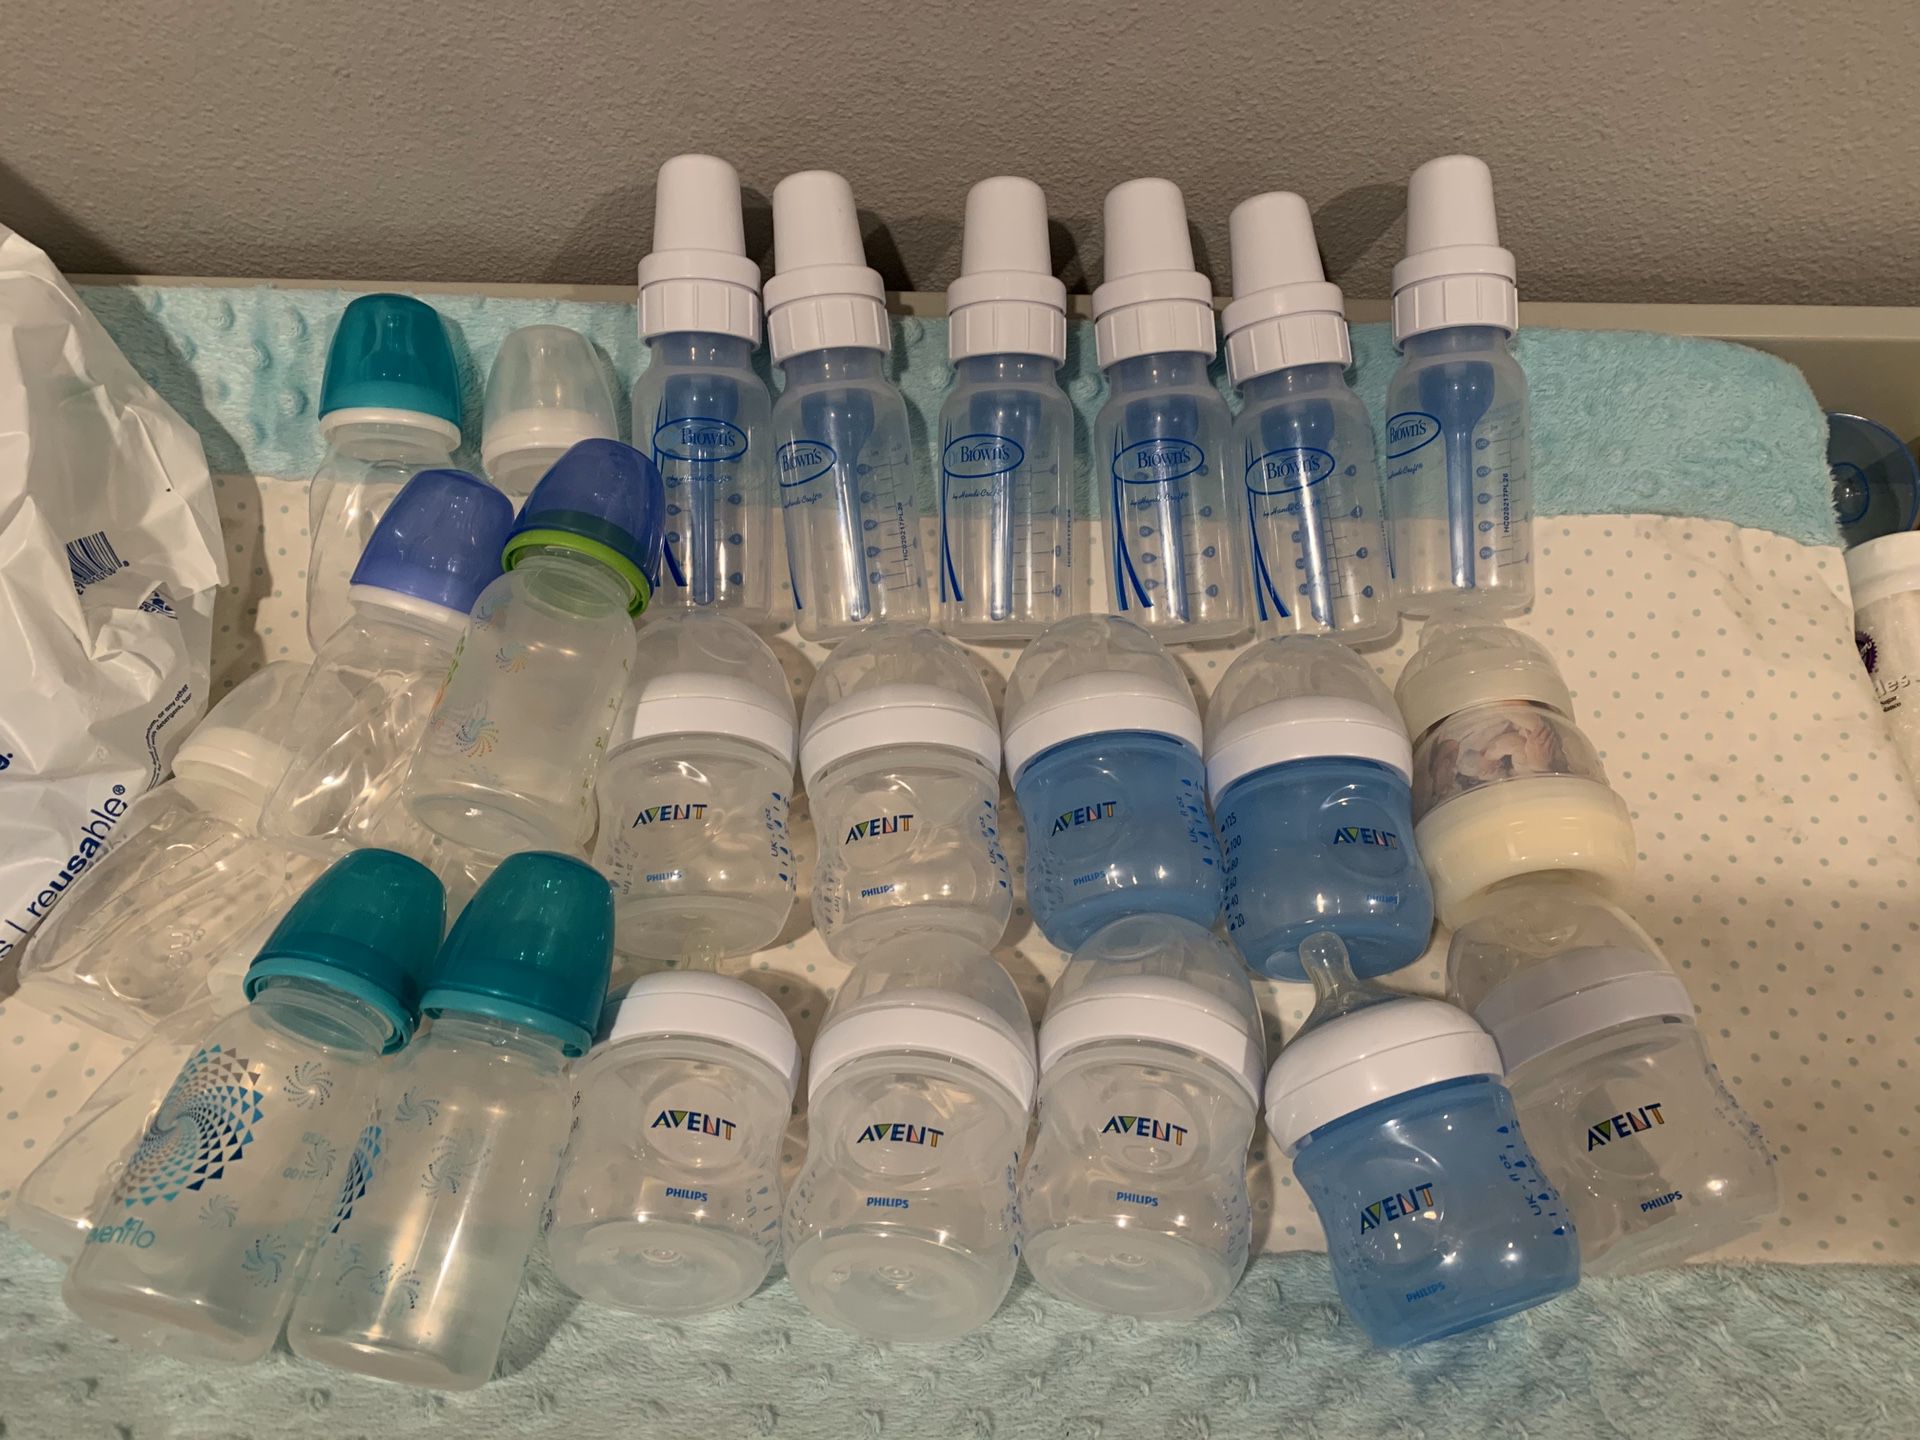 Free baby bottles